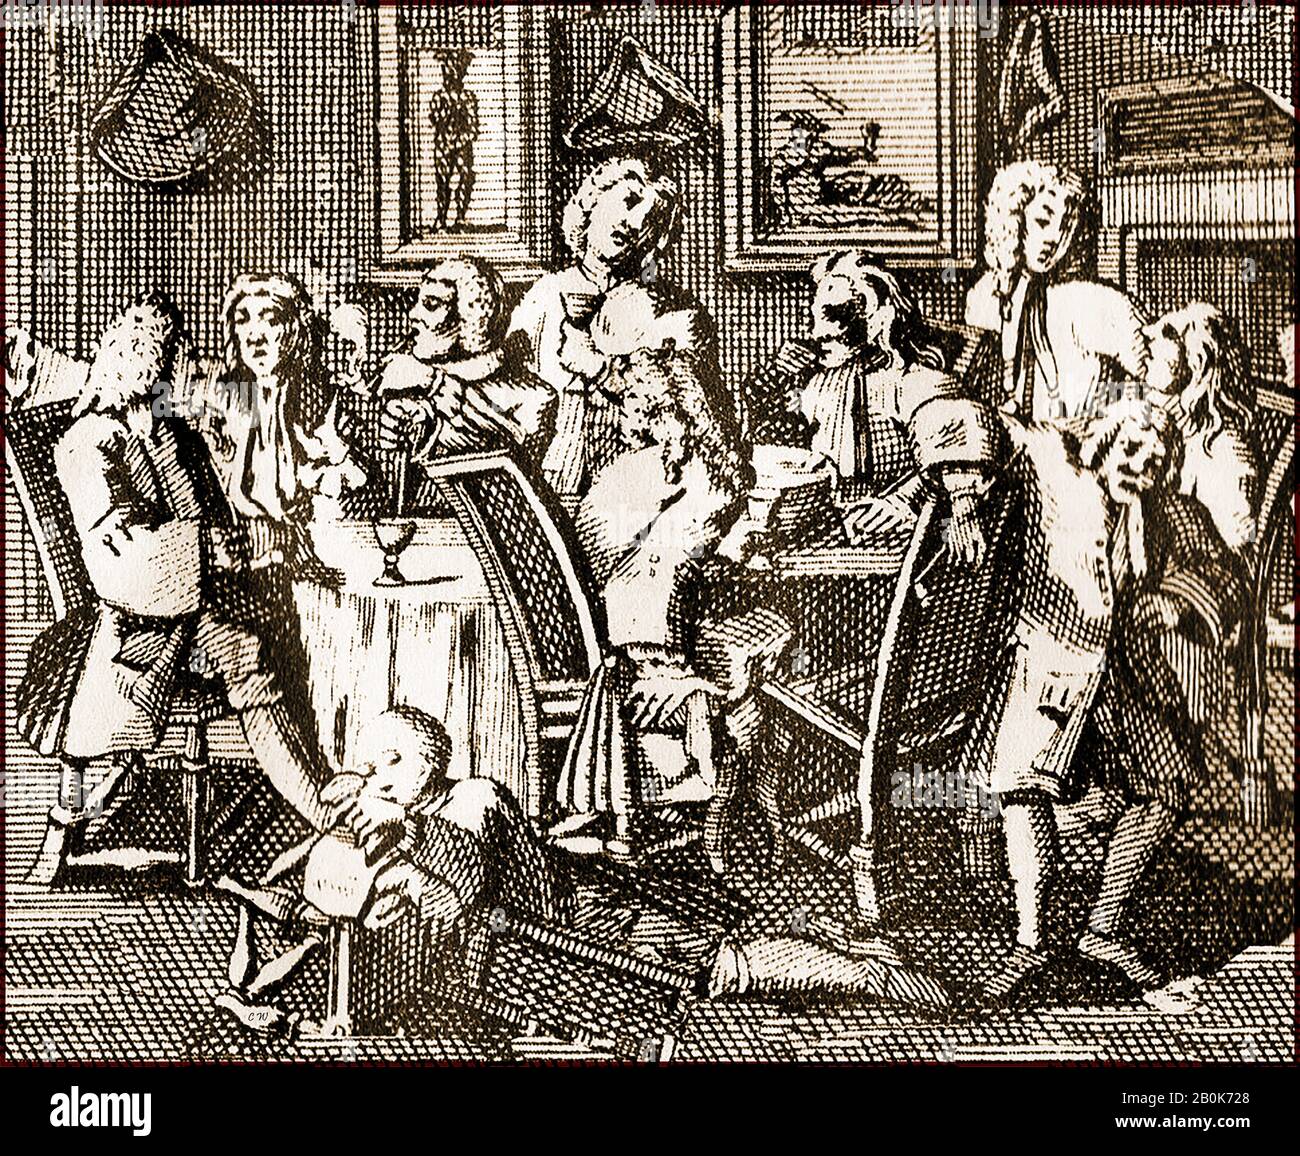 Gravure du XVIIIe siècle - Richard Lee au "Golden Tobacco Roll" de Panton Street, près de Leicester Fields, Londres UK (après une gravure attribuée à William Hogarth). Le dessin a été utilisé dans une carte de commerce pour Richard Lee, le tobacconiste dans les années 1700 Banque D'Images